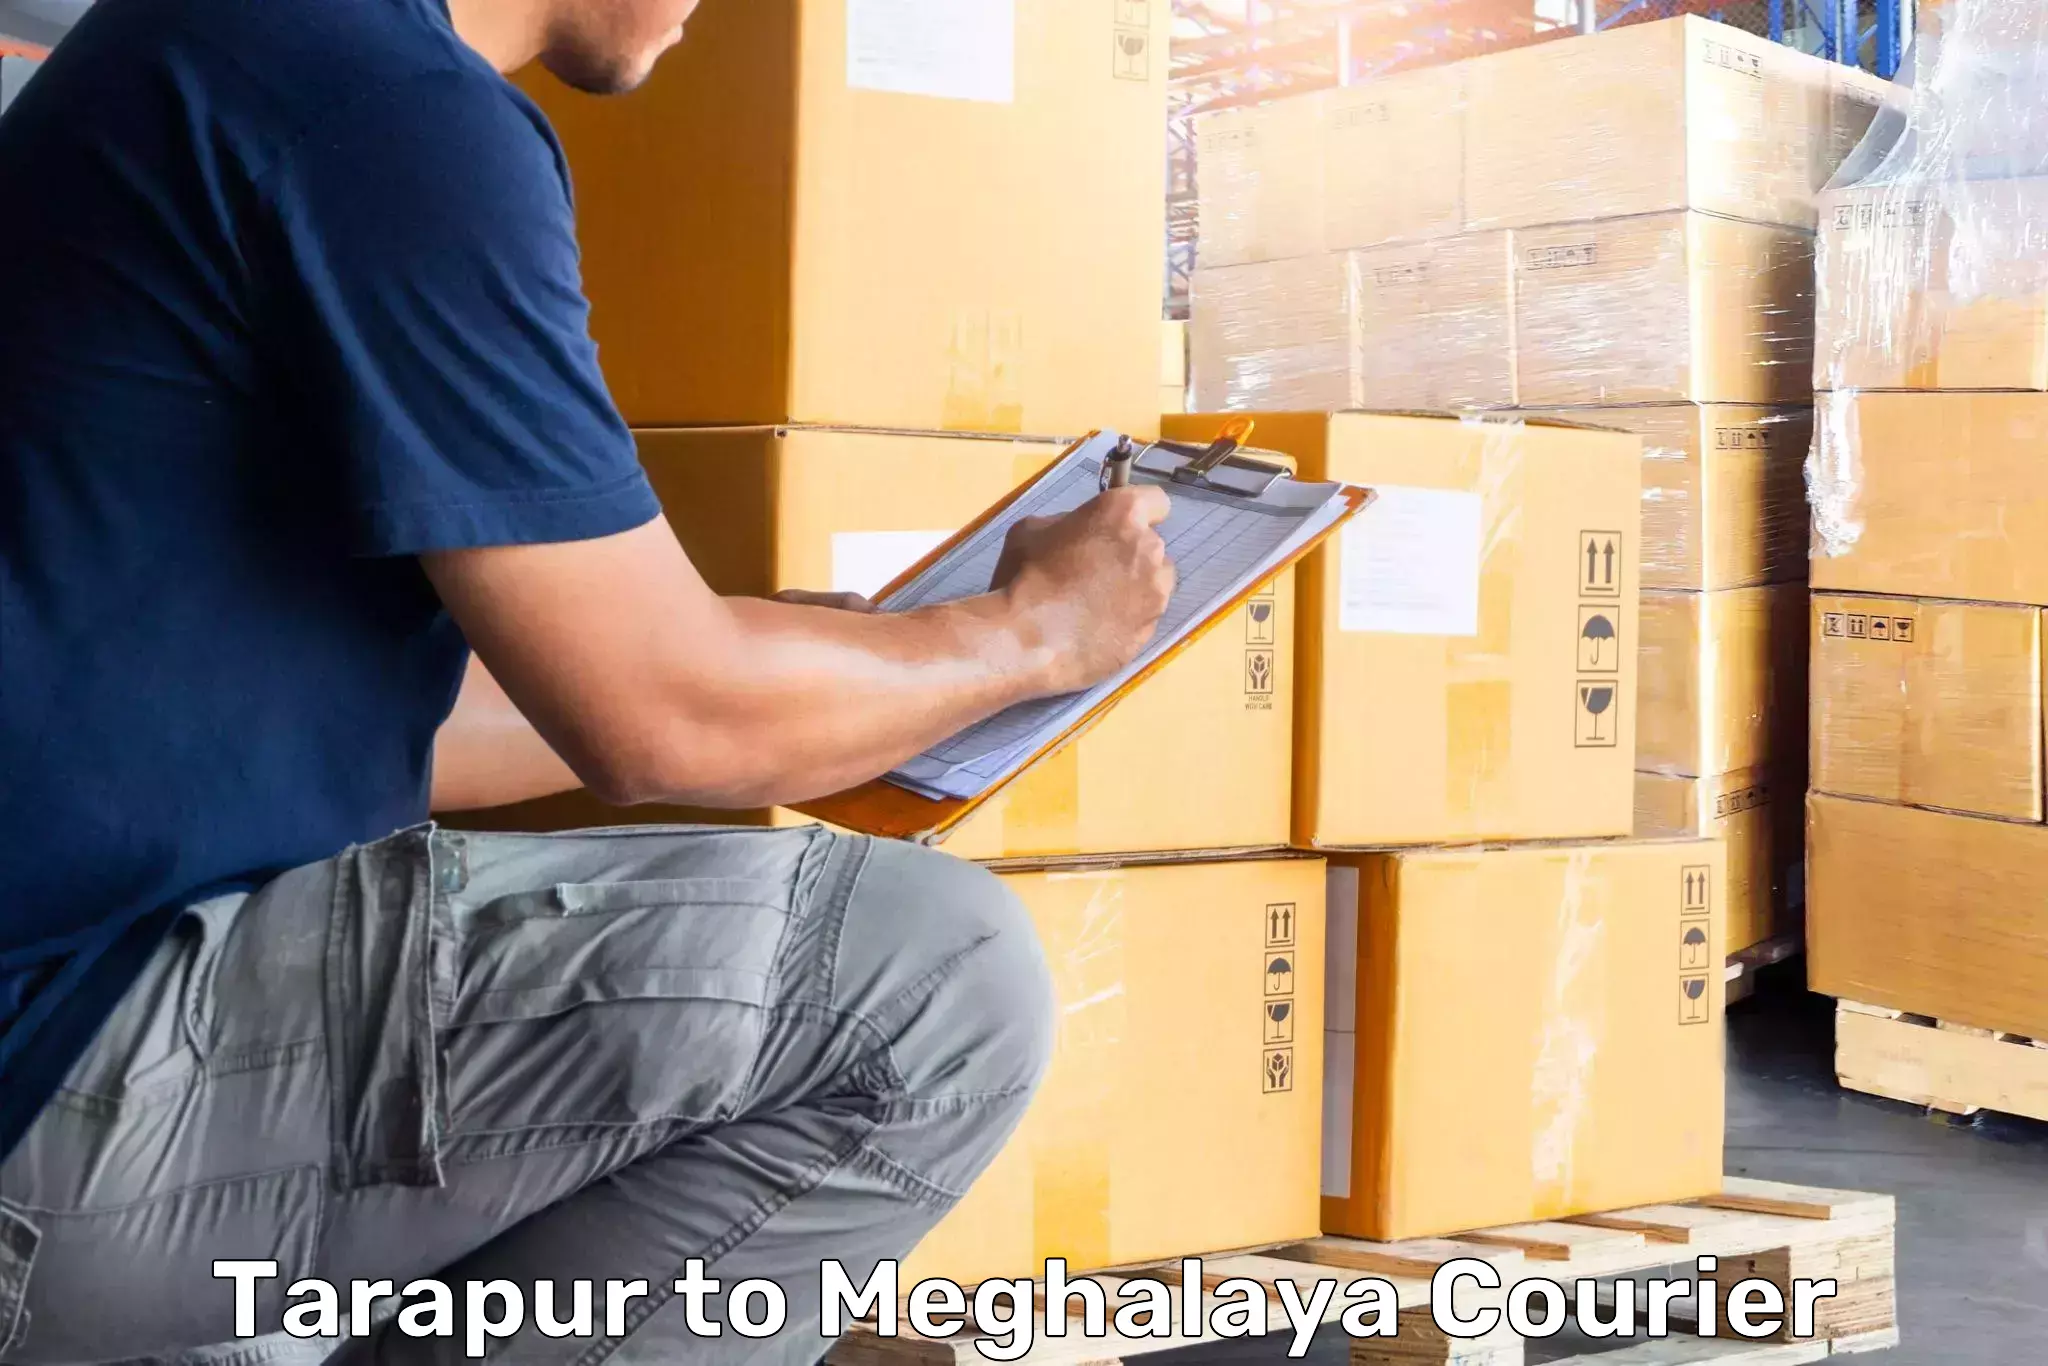 Luggage shipment specialists Tarapur to Umsaw